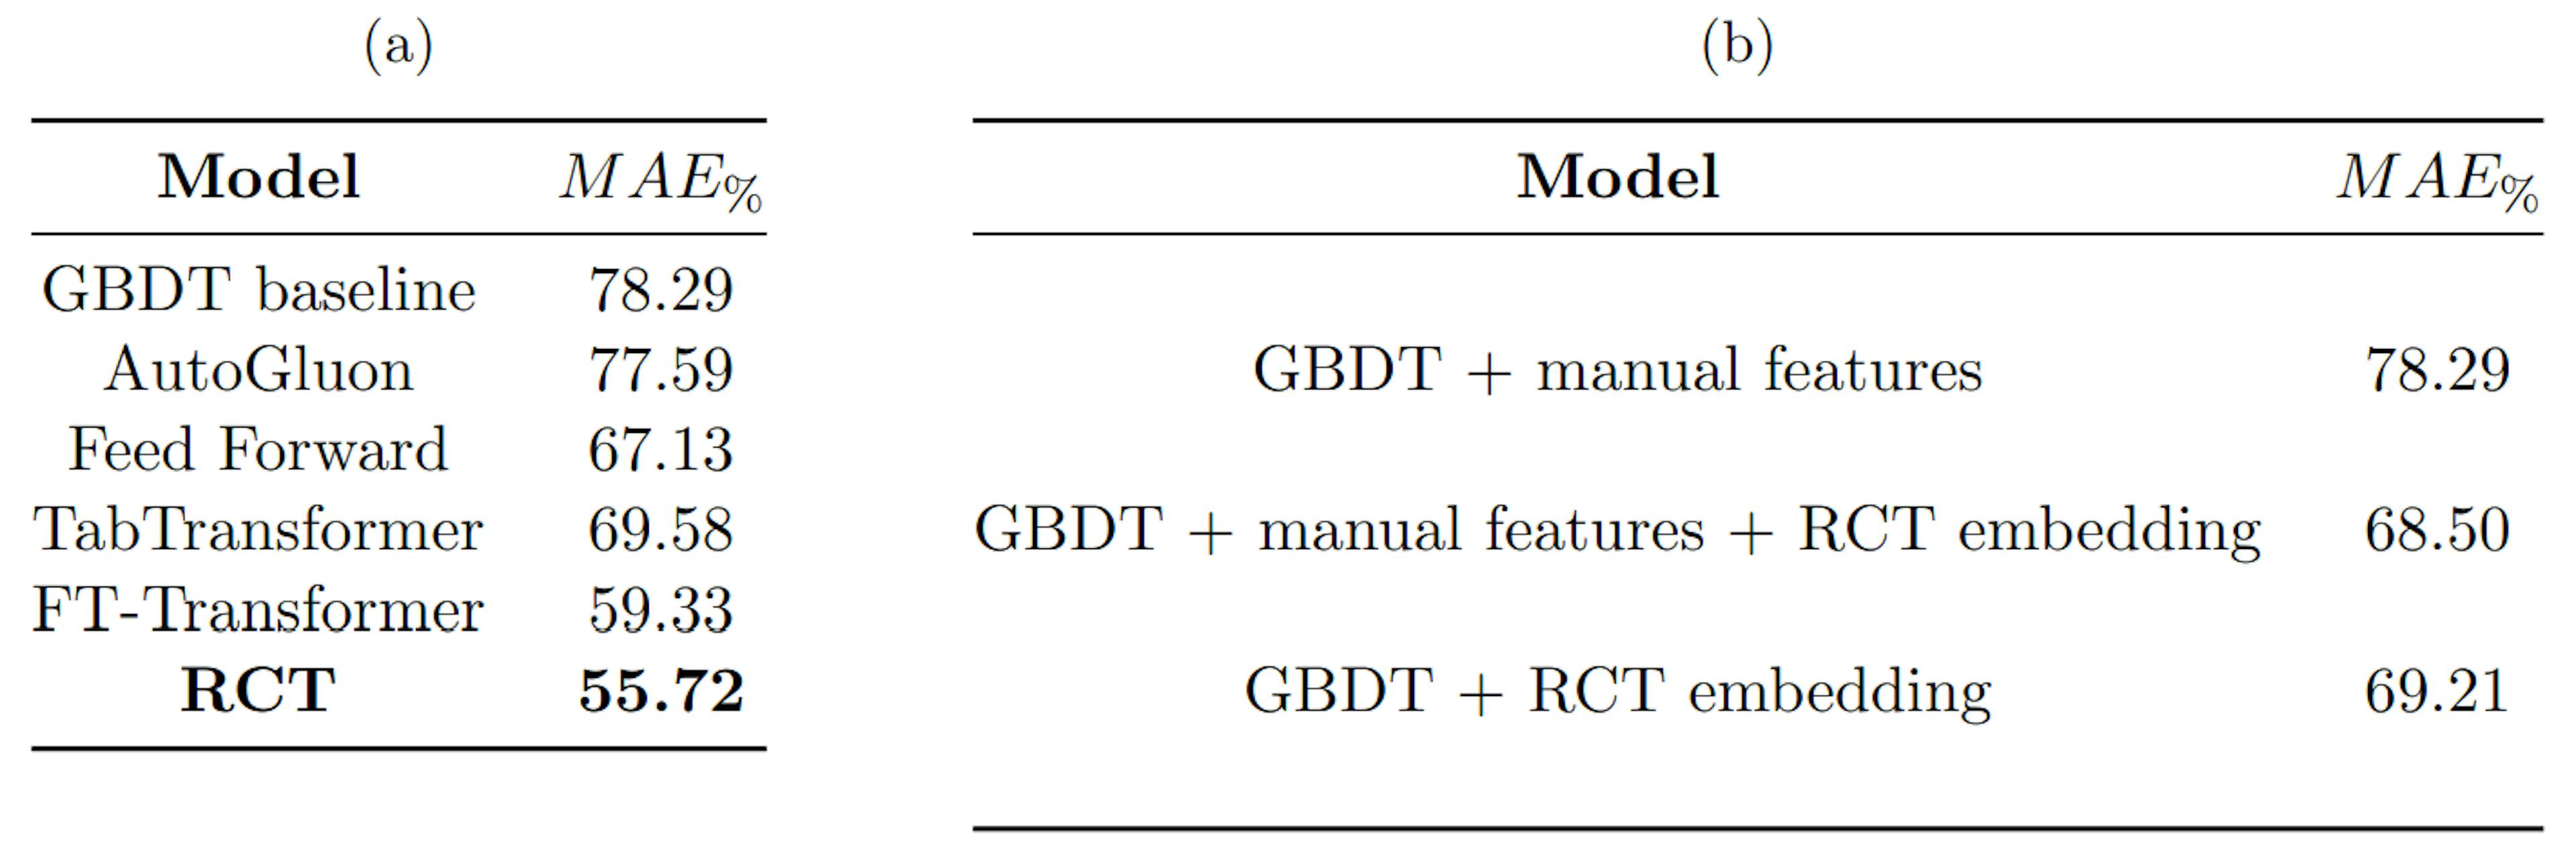 Tabela 1: (a) compara o desempenho do RCT com vários benchmarks, (b) compara o desempenho da linha de base do GBDT com o GBDT treinado com incorporações de RCT. MAE% é calculado conforme mostrado na Equação 4.